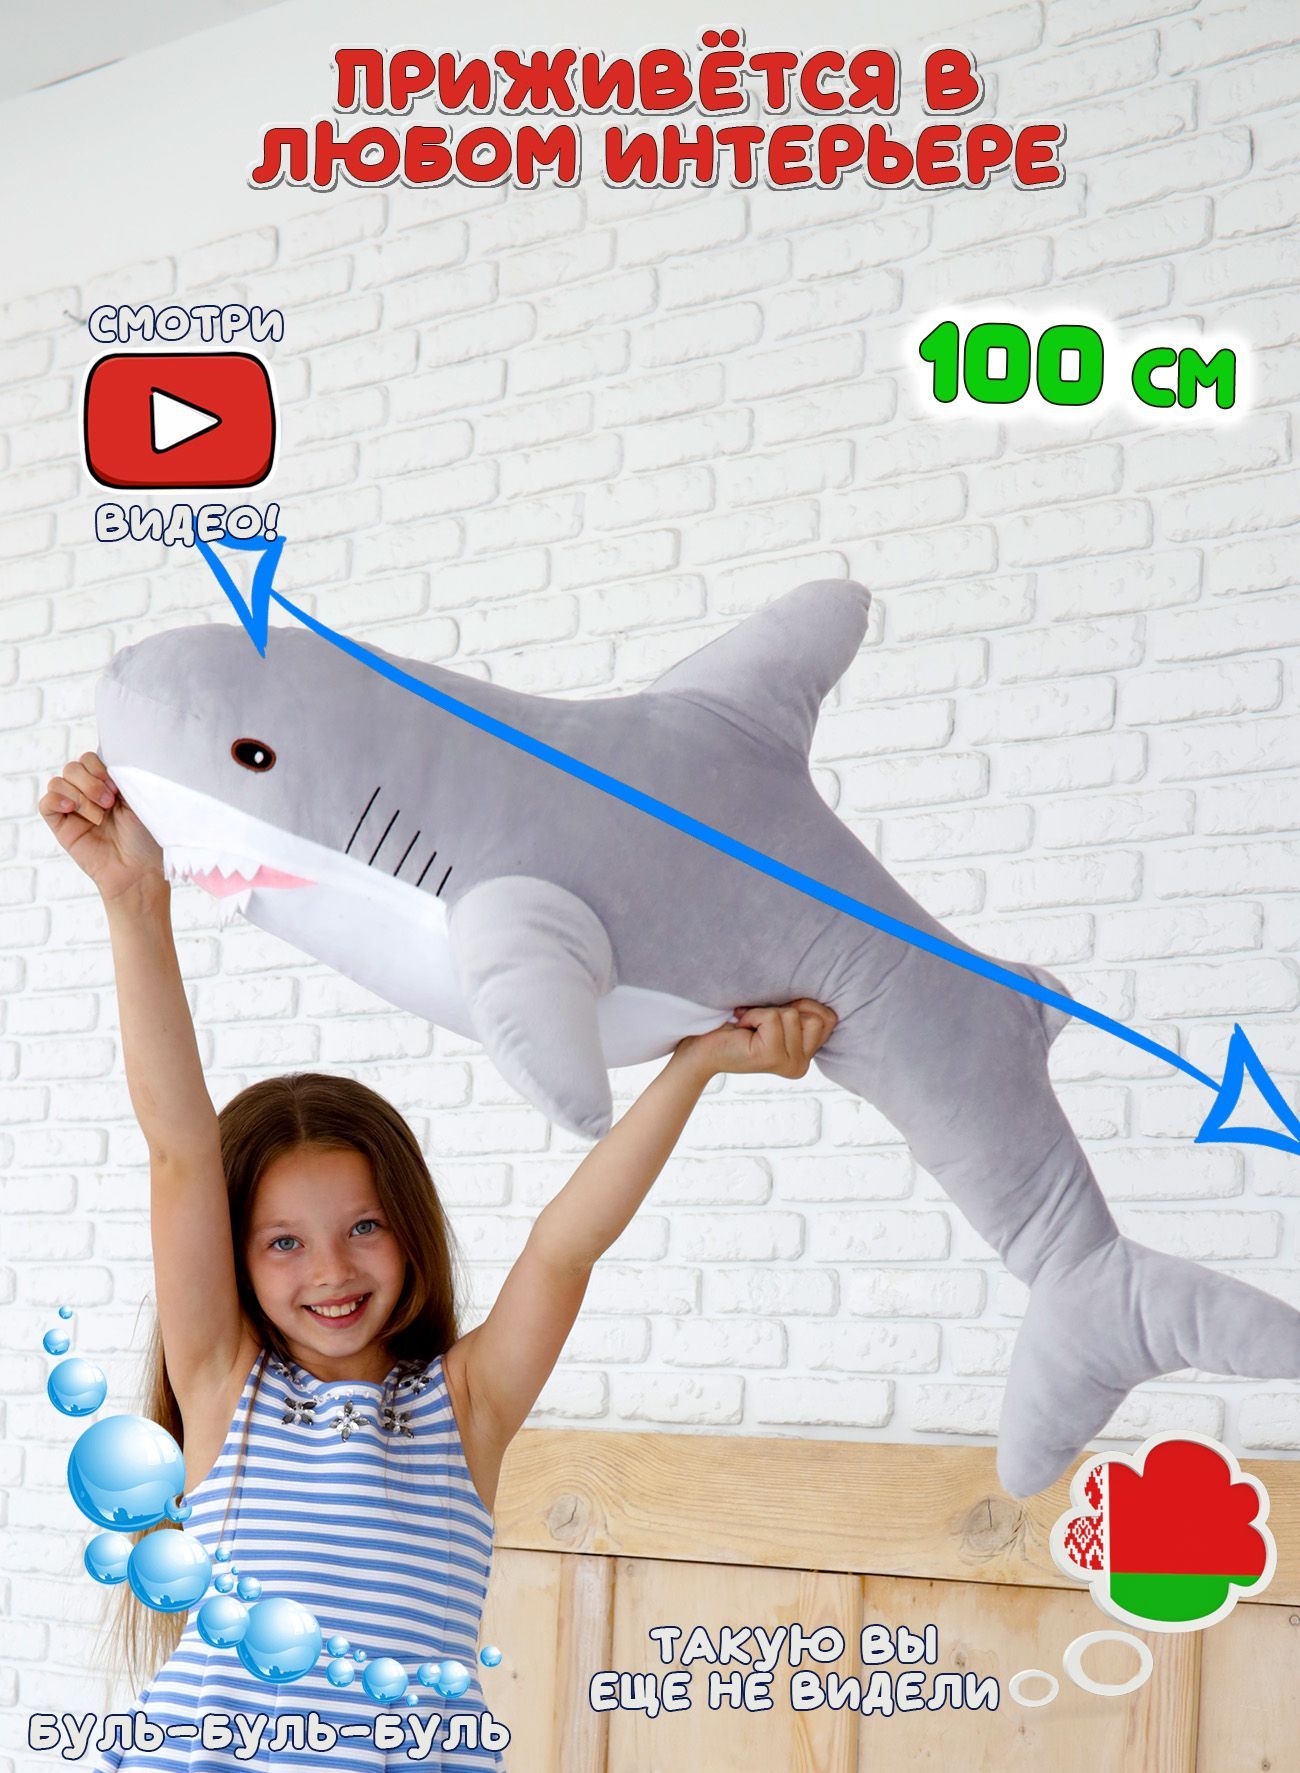 Акула опт. Акула игрушка 140 см. Большая мягкая игрушка акула синего цвета. Акула 160см. Свитер с акулой.